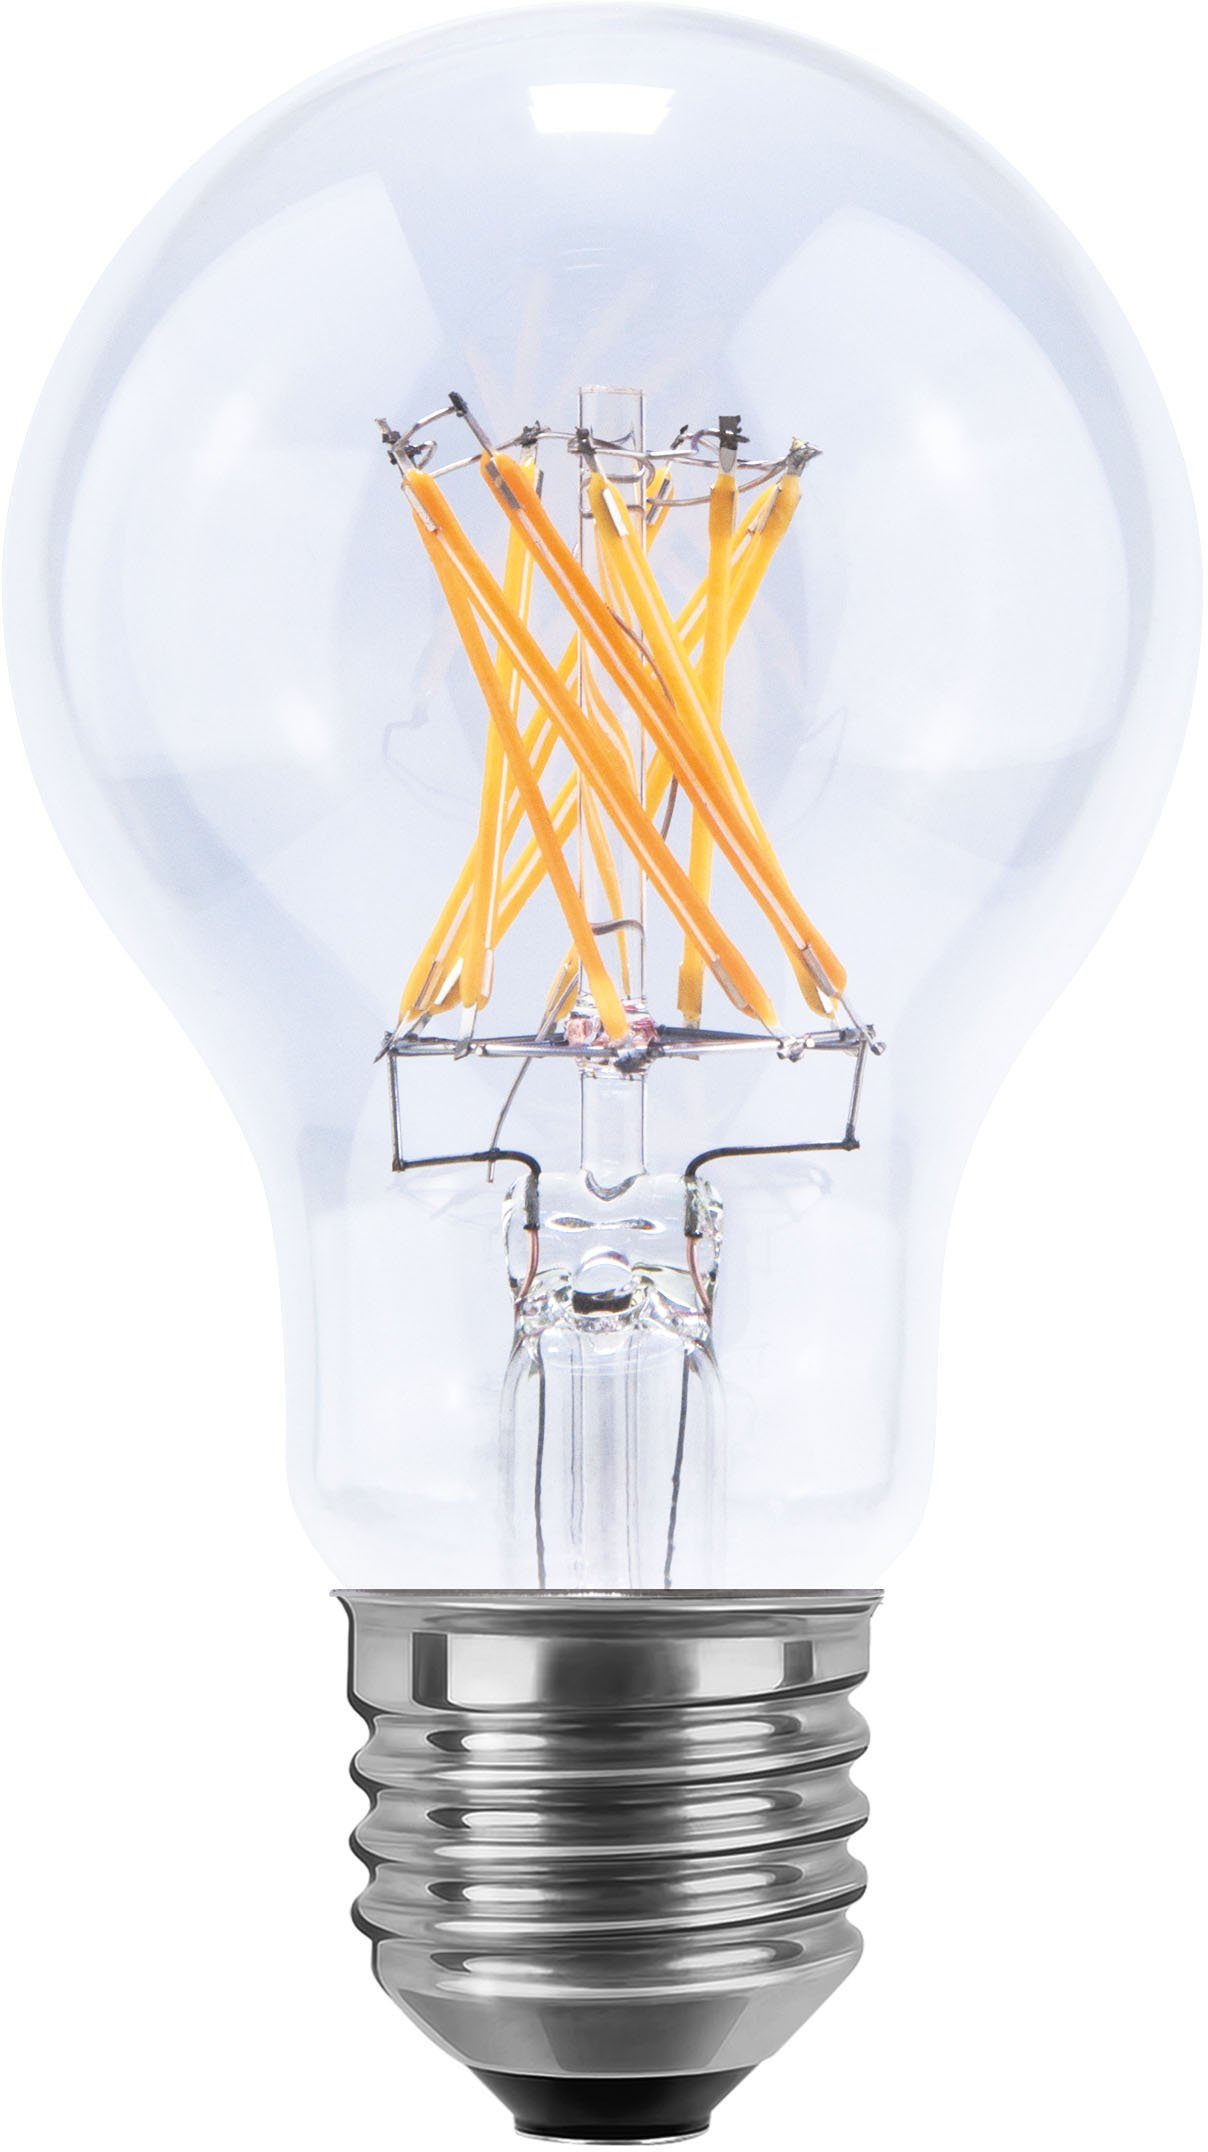 SEGULA LED-Leuchtmittel LED Glühlampe klar, E27, 650Lumen E27, 2700K, Glühlampe dimmbar, Warmweiß, klar